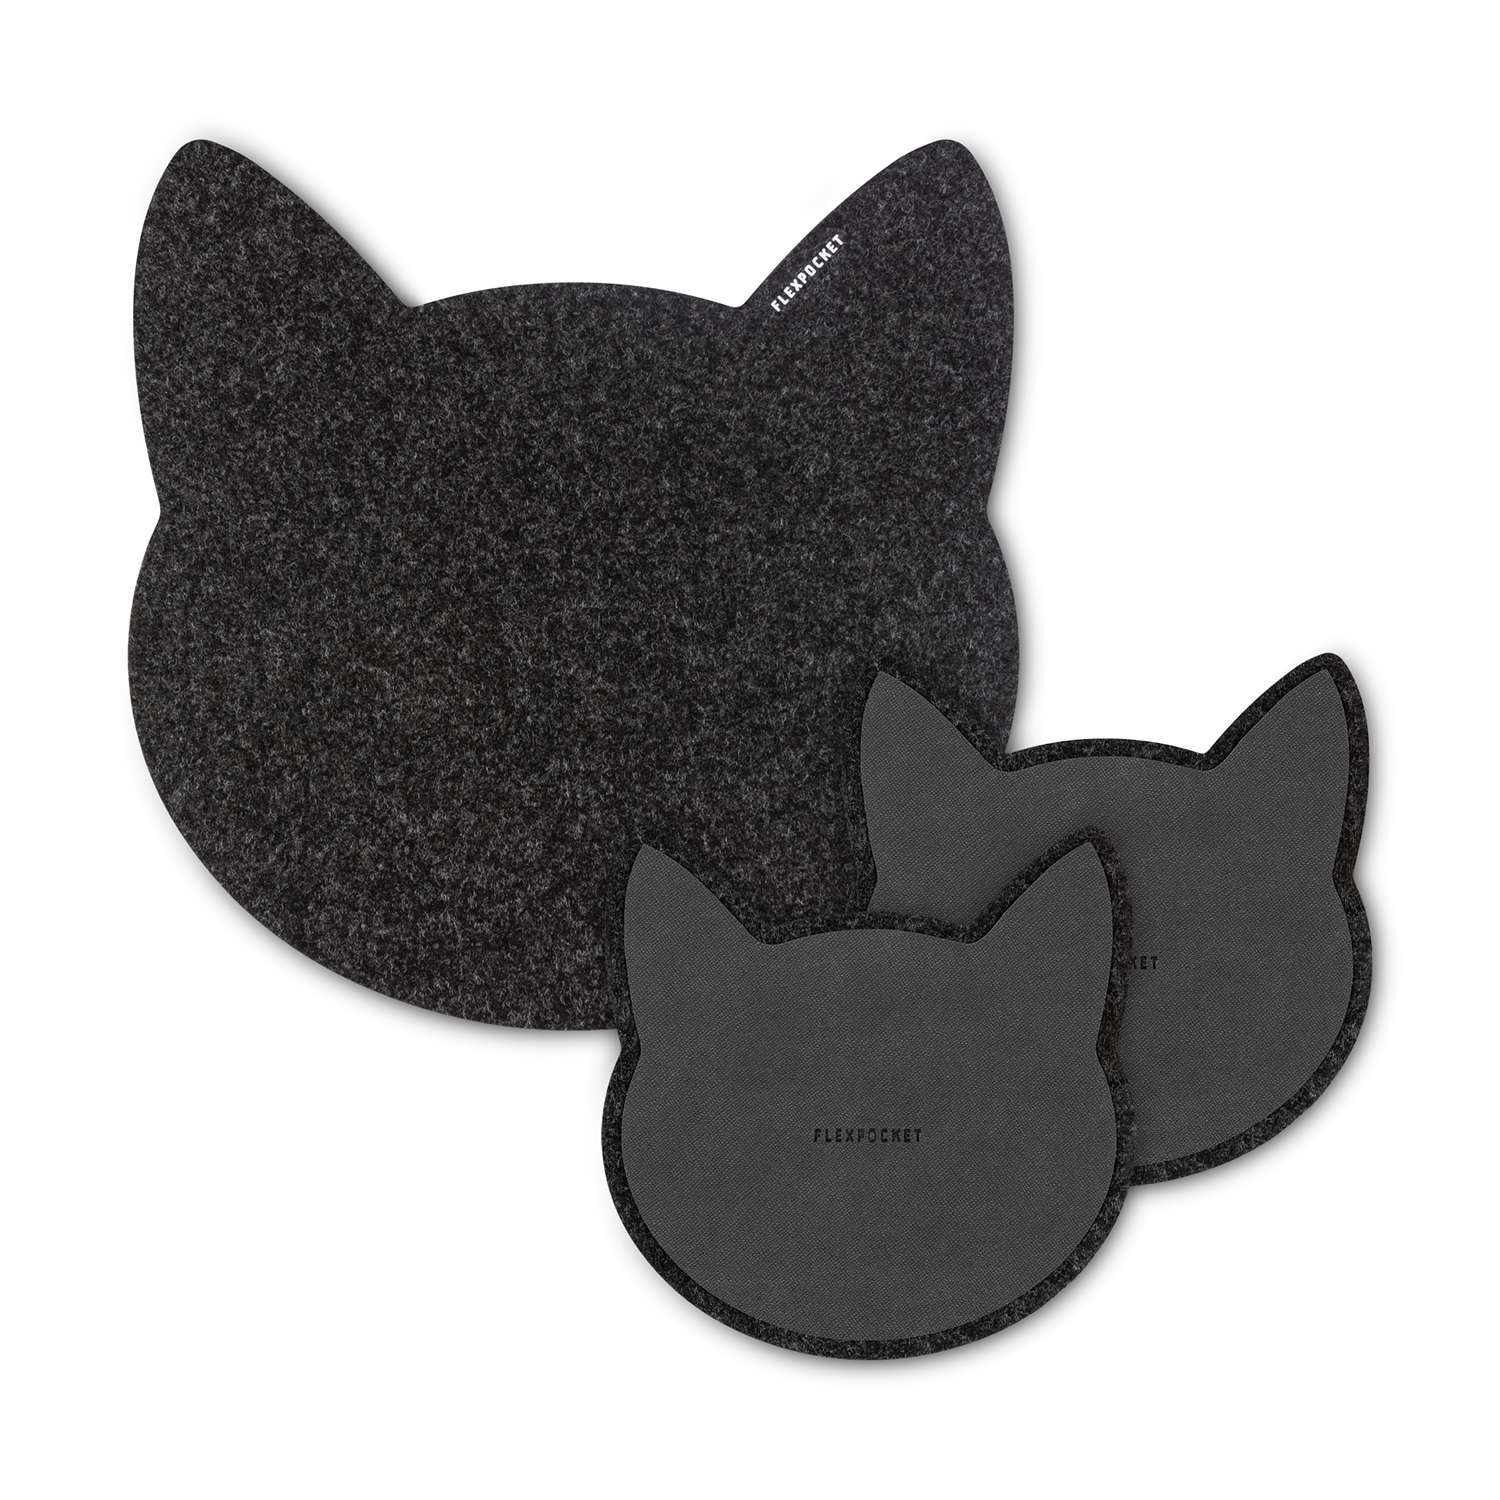 Настольный коврик Flexpocket для мыши в виде кошки + комплект с подставкой под кружку черный - фото 1